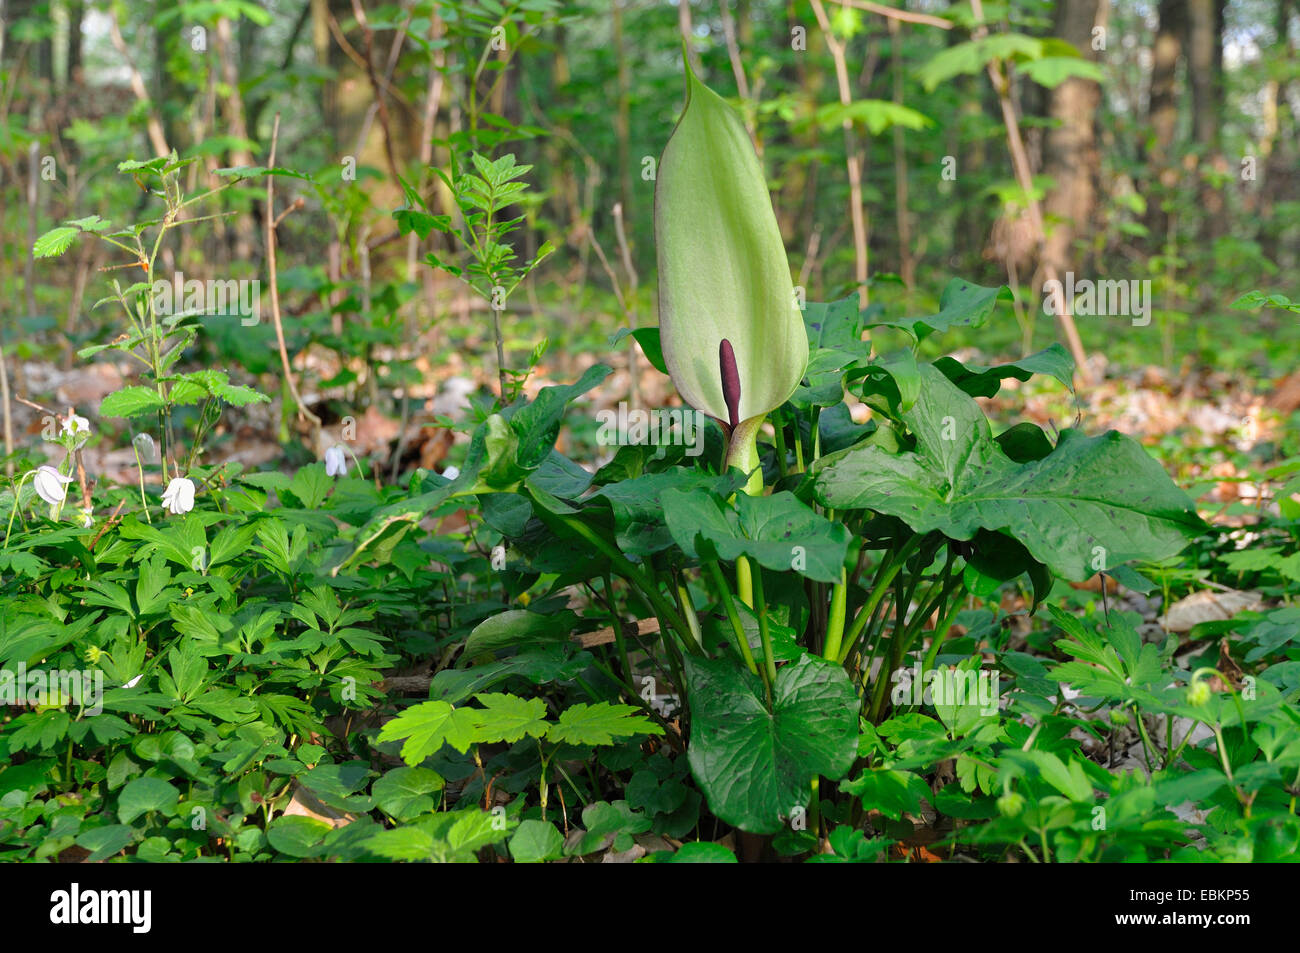 lords-and-ladies, portland arrowroot, cuckoopint (Arum maculatum), flowering, Germany Stock Photo